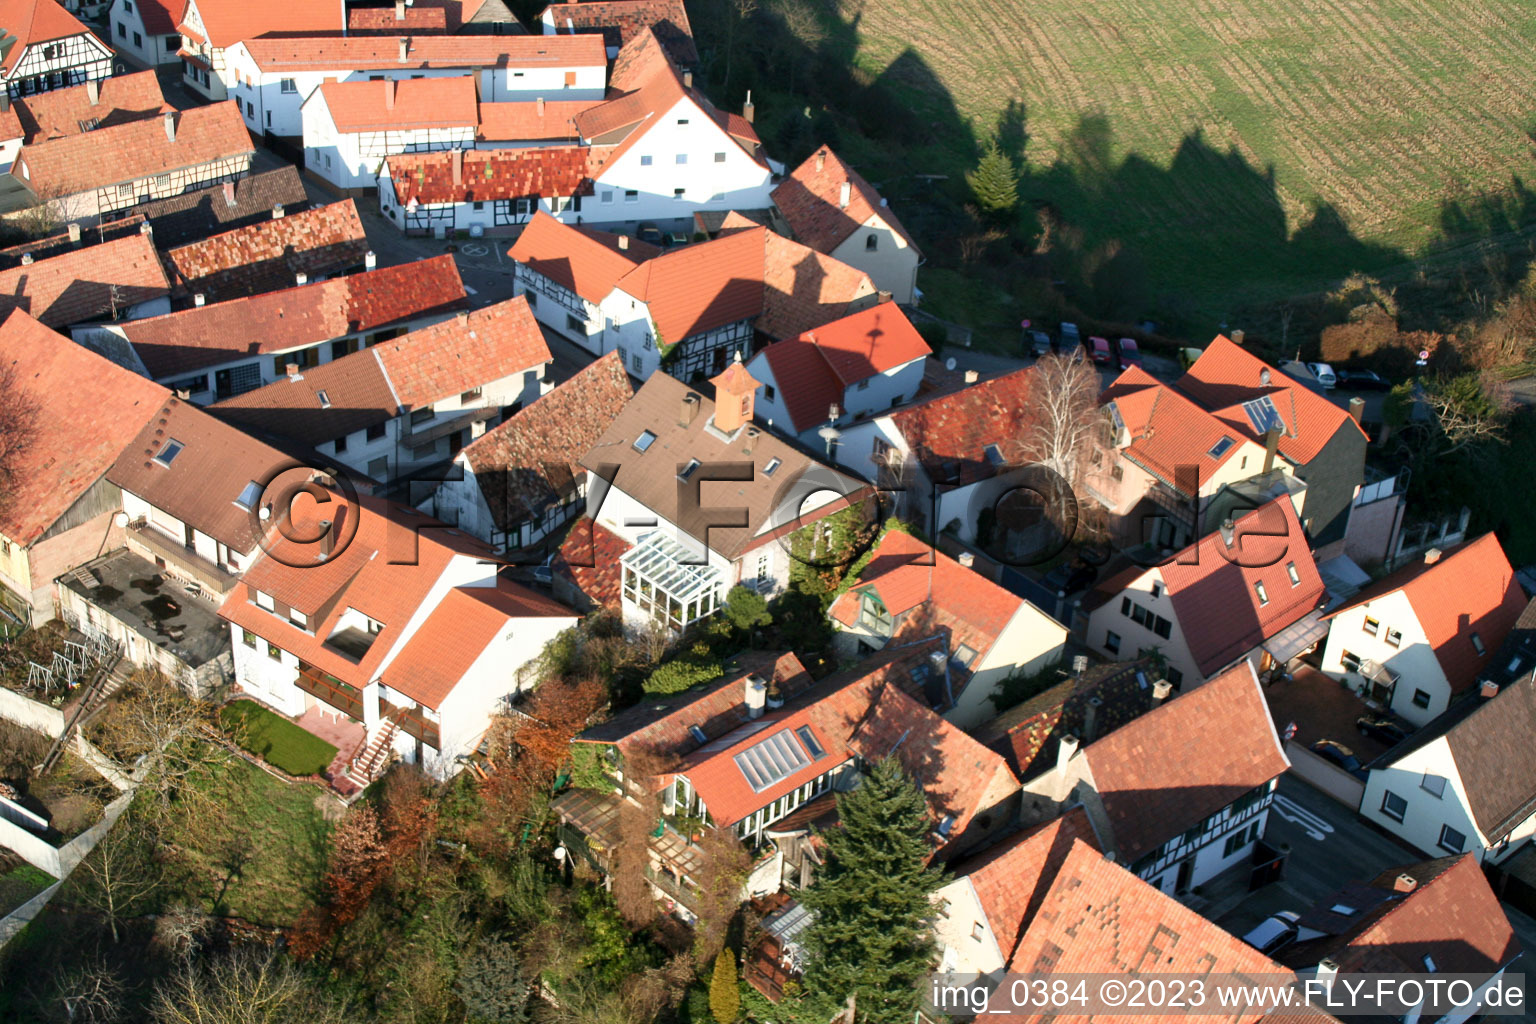 Jockgrim Ludwigstr im Bundesland Rheinland-Pfalz, Deutschland von der Drohne aus gesehen